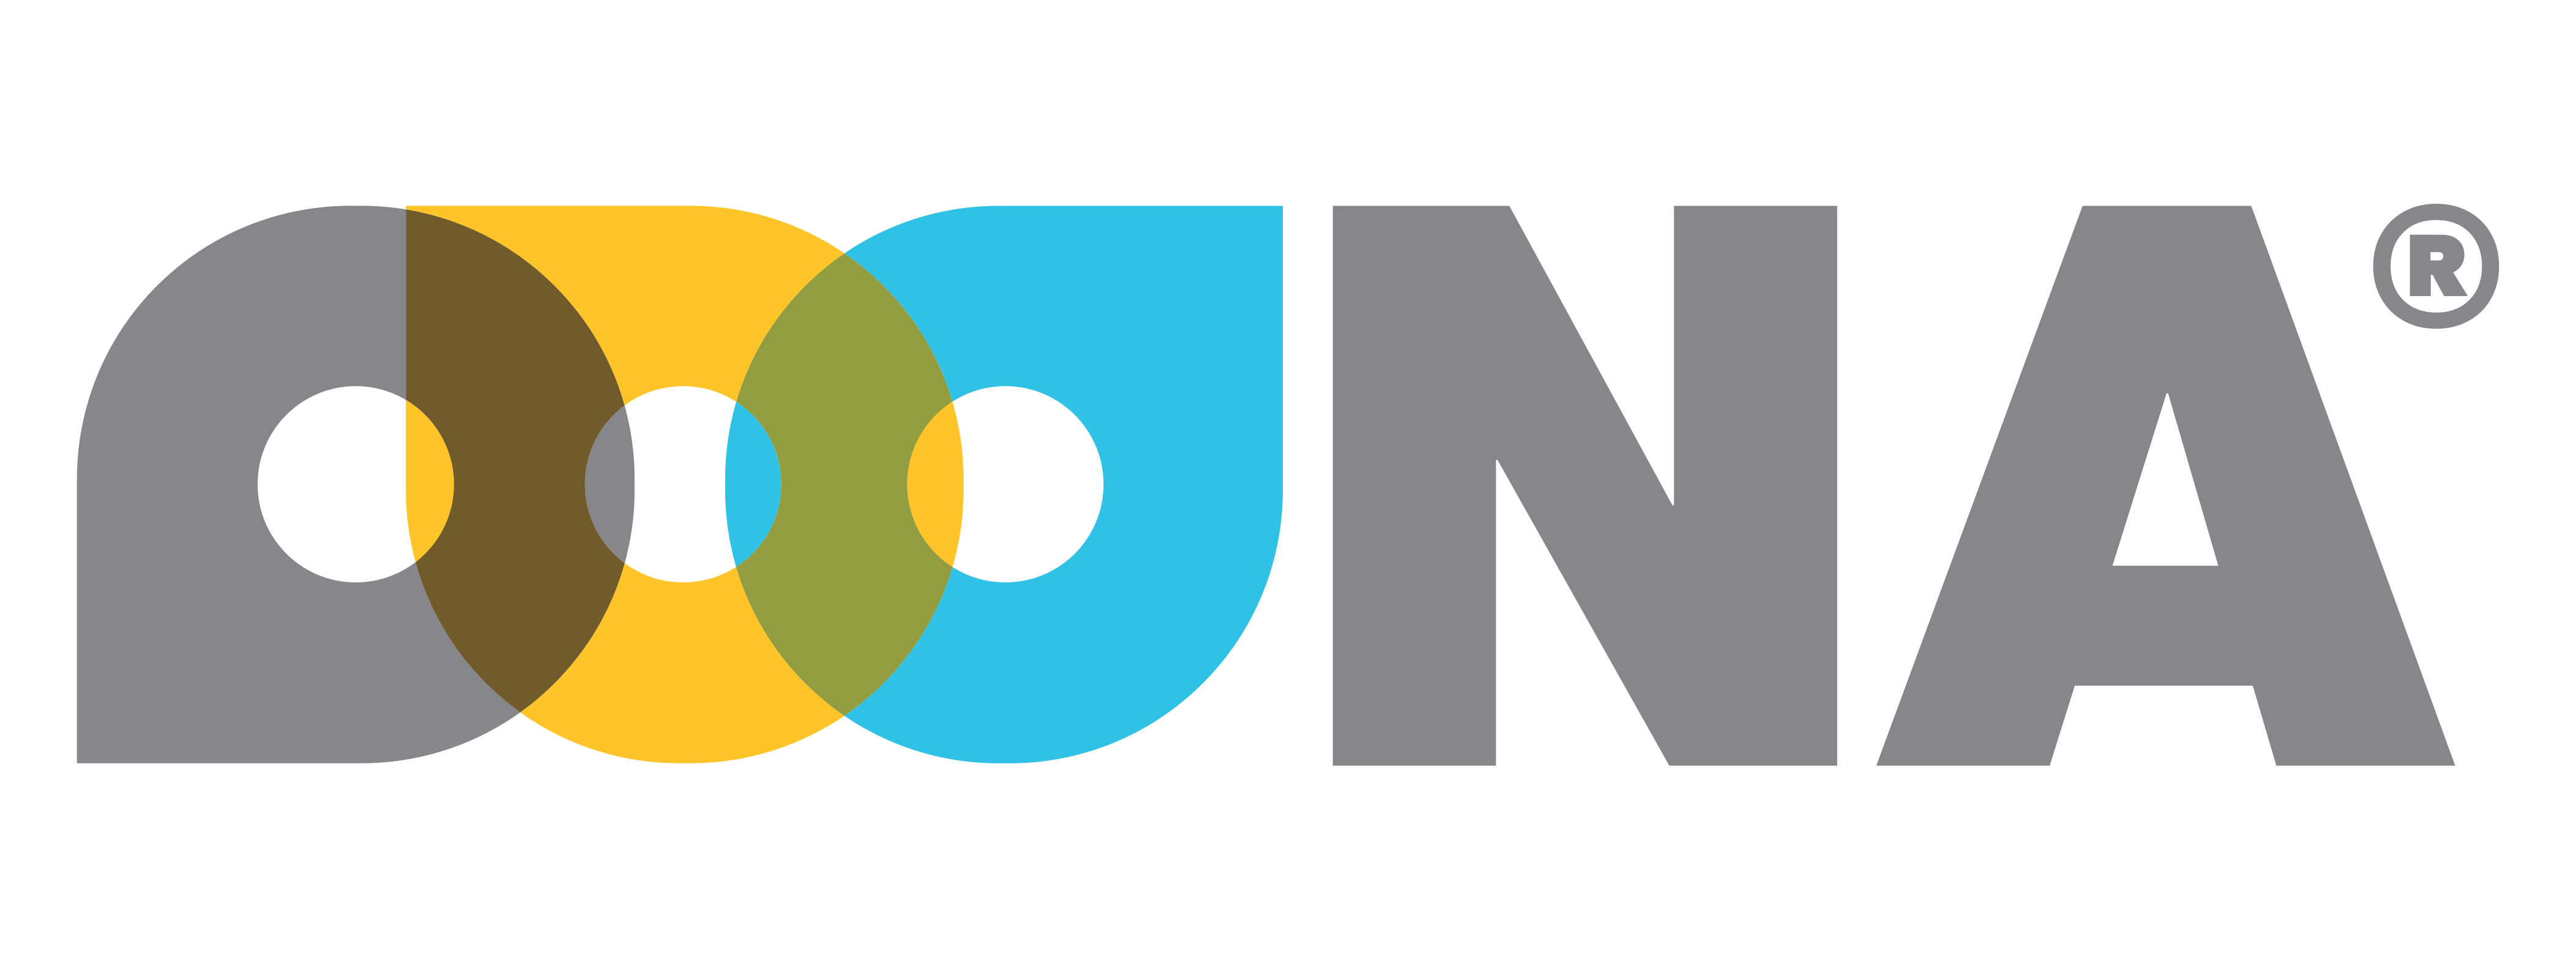 OOONA Logo 